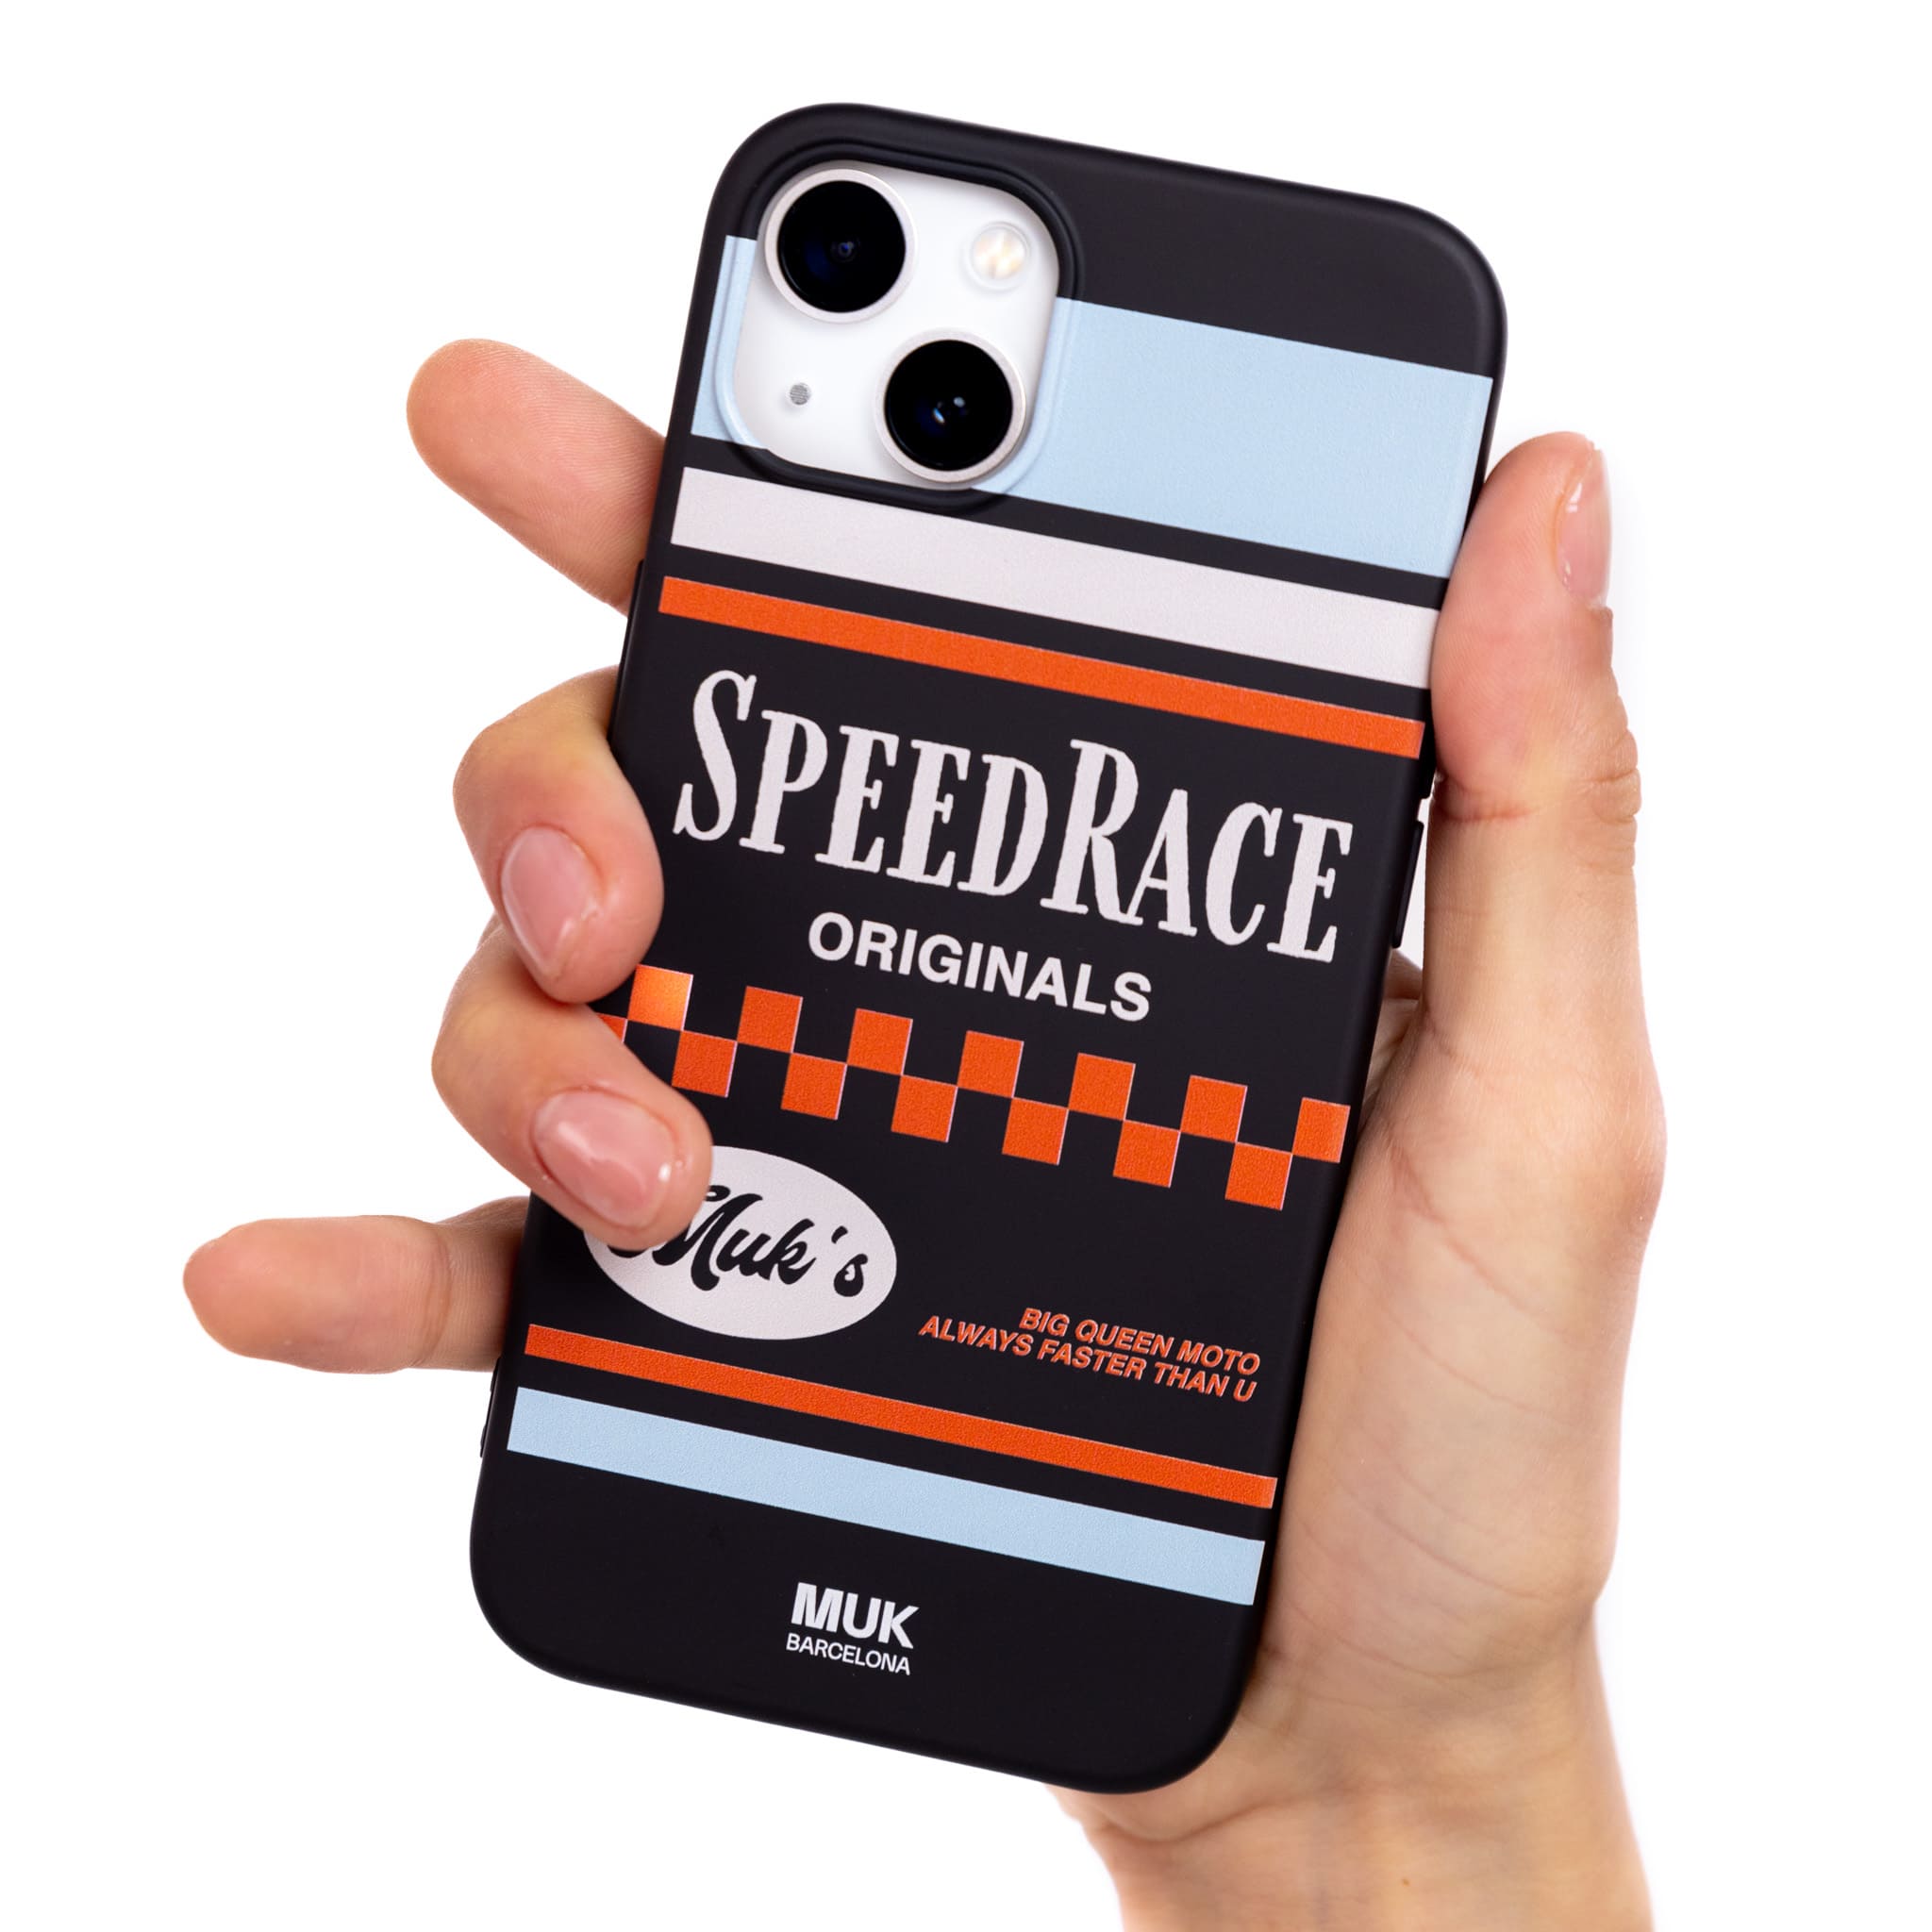 Funda de móvil TPU negra con estilo motero y frase "speed race" en color blanco.
